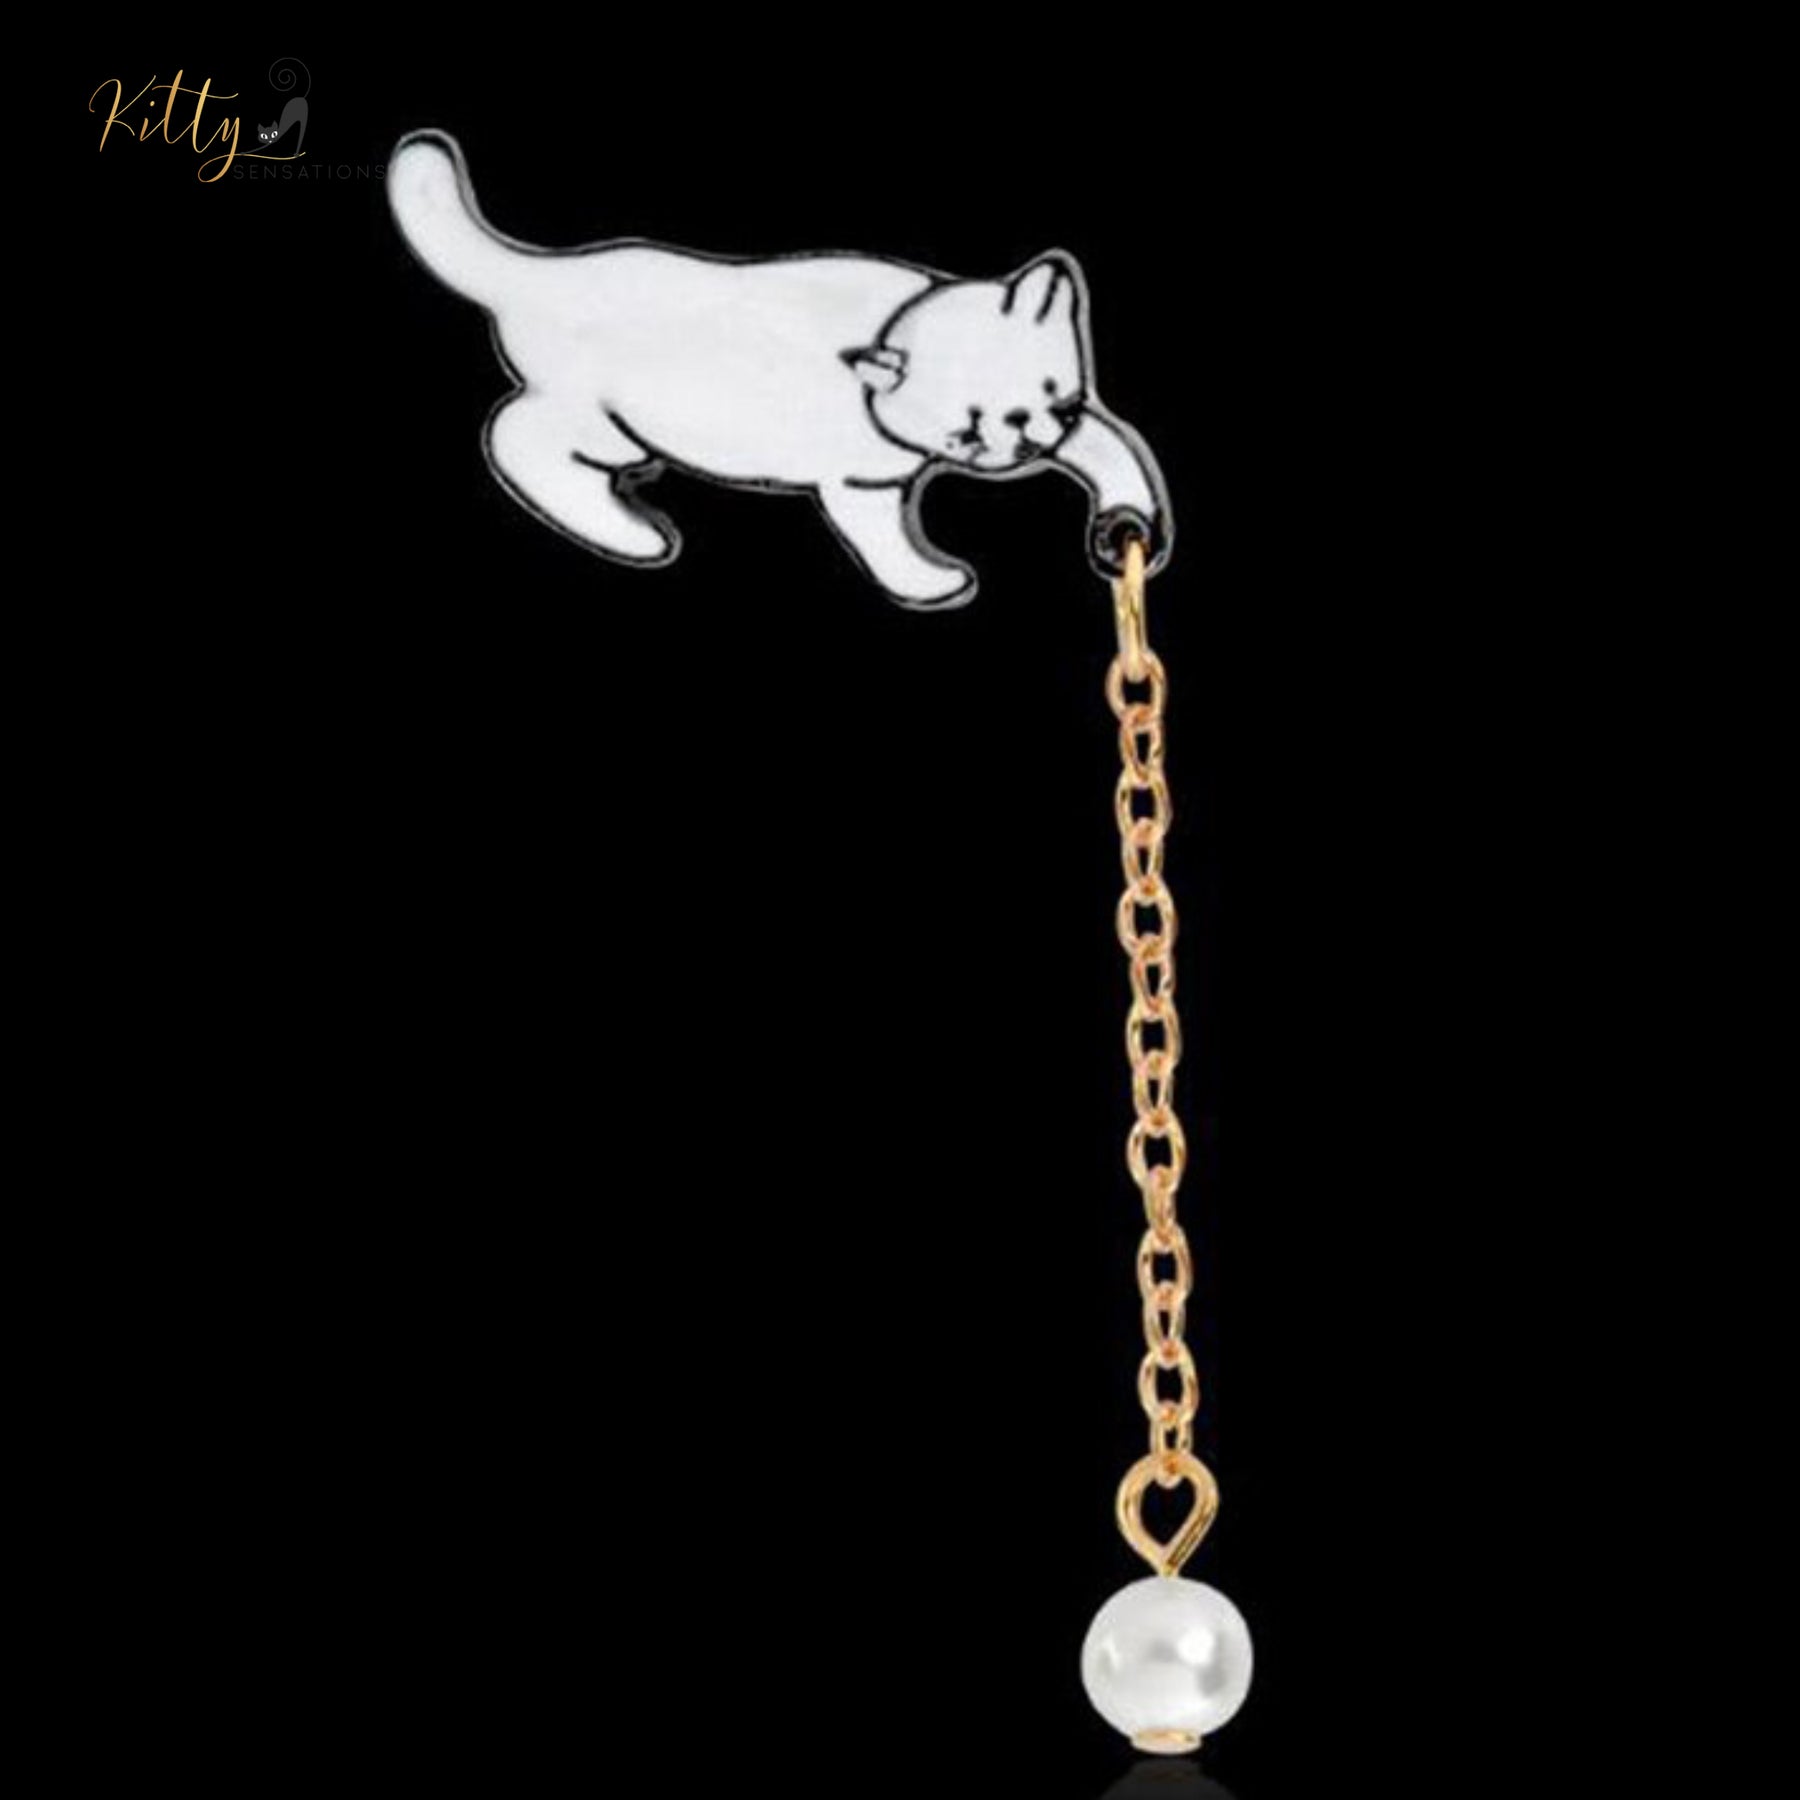 www.KittySensations.com: Playful Cat Lapel Pin / Brooch (Enamel Over Metal) ($18.02): https://www.kittysensations.com/products/playful-cat-brooch-enamel-over-metal